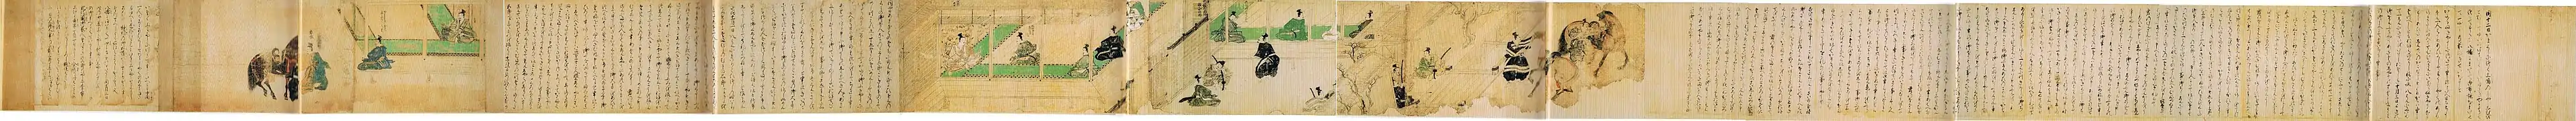 Premier rouleau, 3, Kamakura, textes 6 à 9, dessins 9 et 10